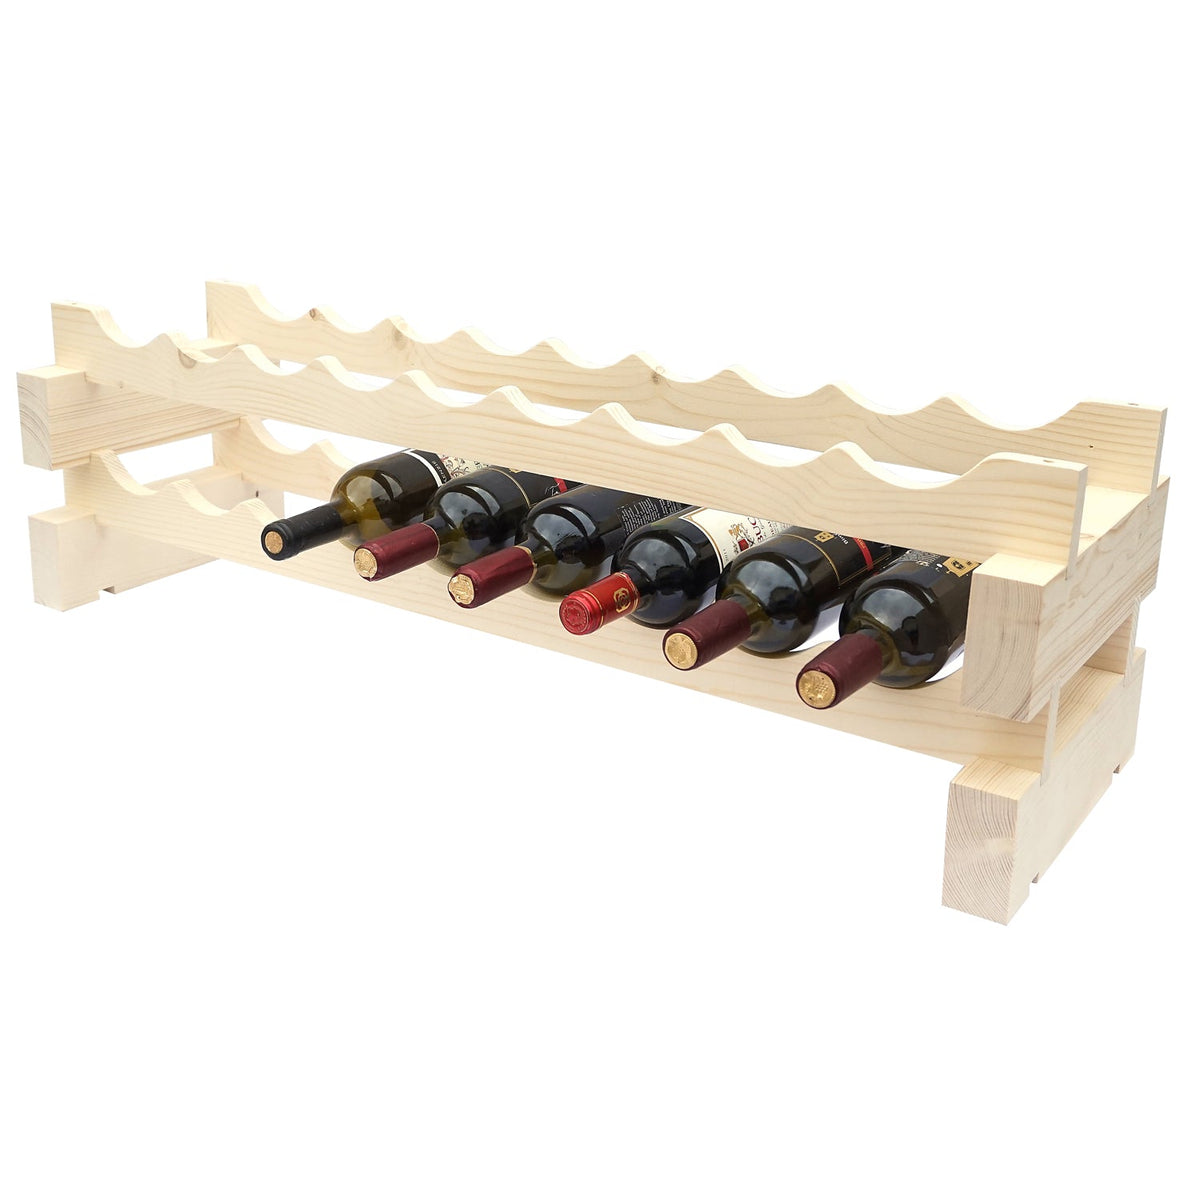 Modular Wine Racks - Wine Stash